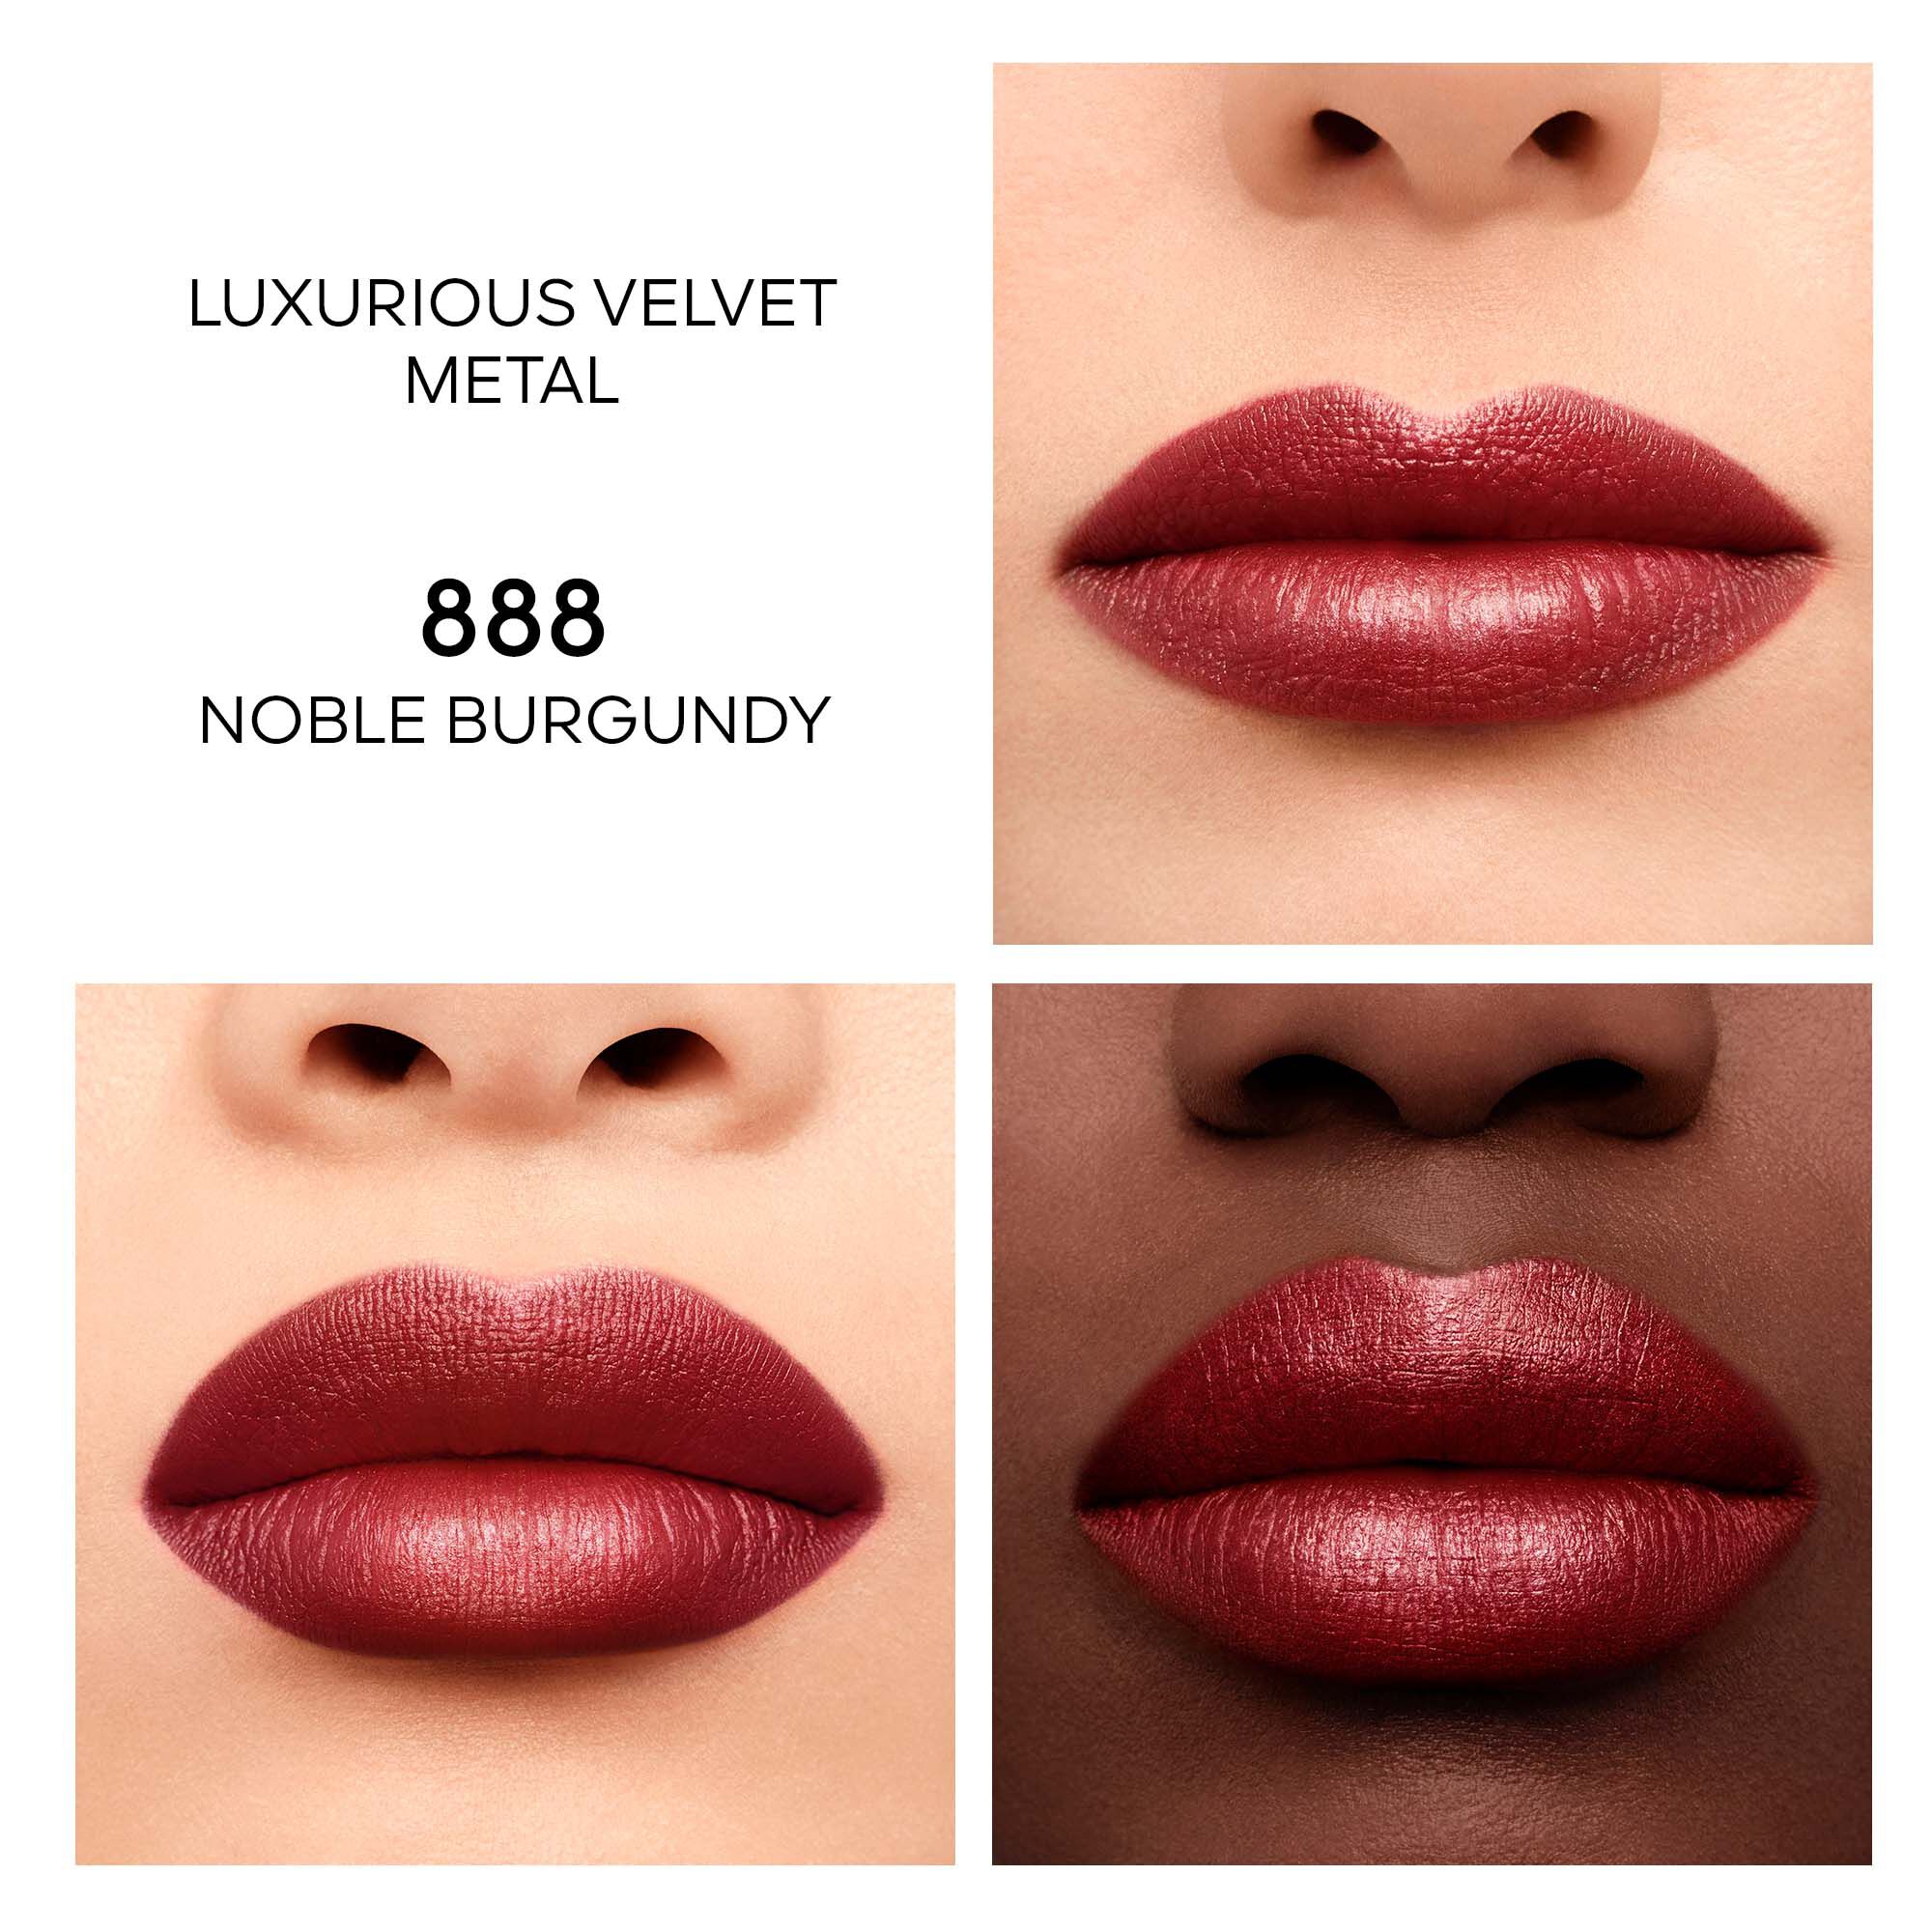 Rouge G Luxurious Velvet ⋅ 16H WEAR VELVET METAL LIPSTICK ⋅ GUERLAIN